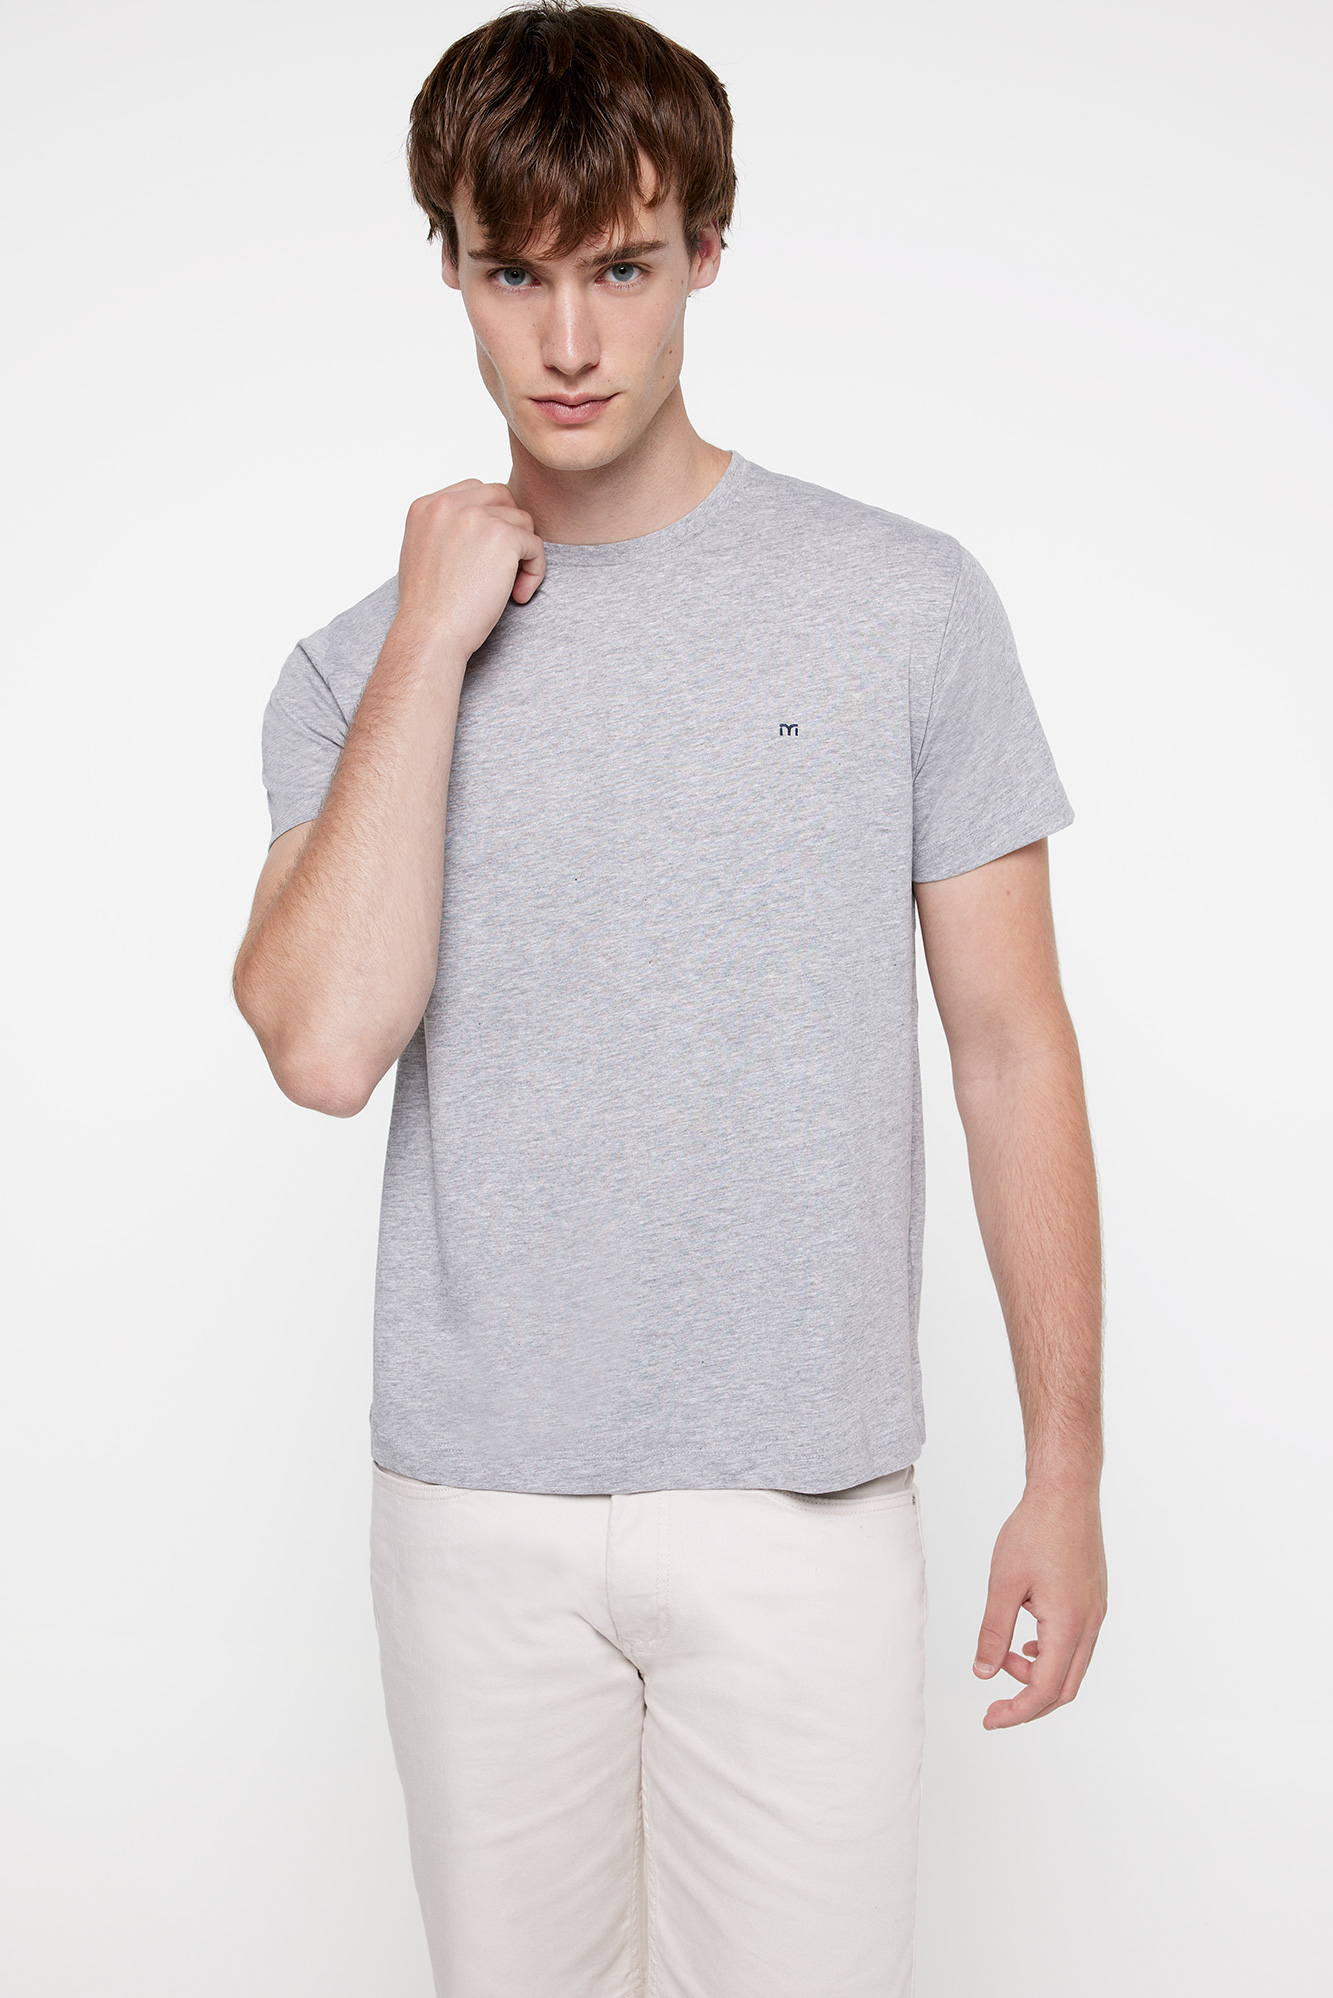 Camiseta manga corta básica (color melange), Ofertas en camisetas de hombre